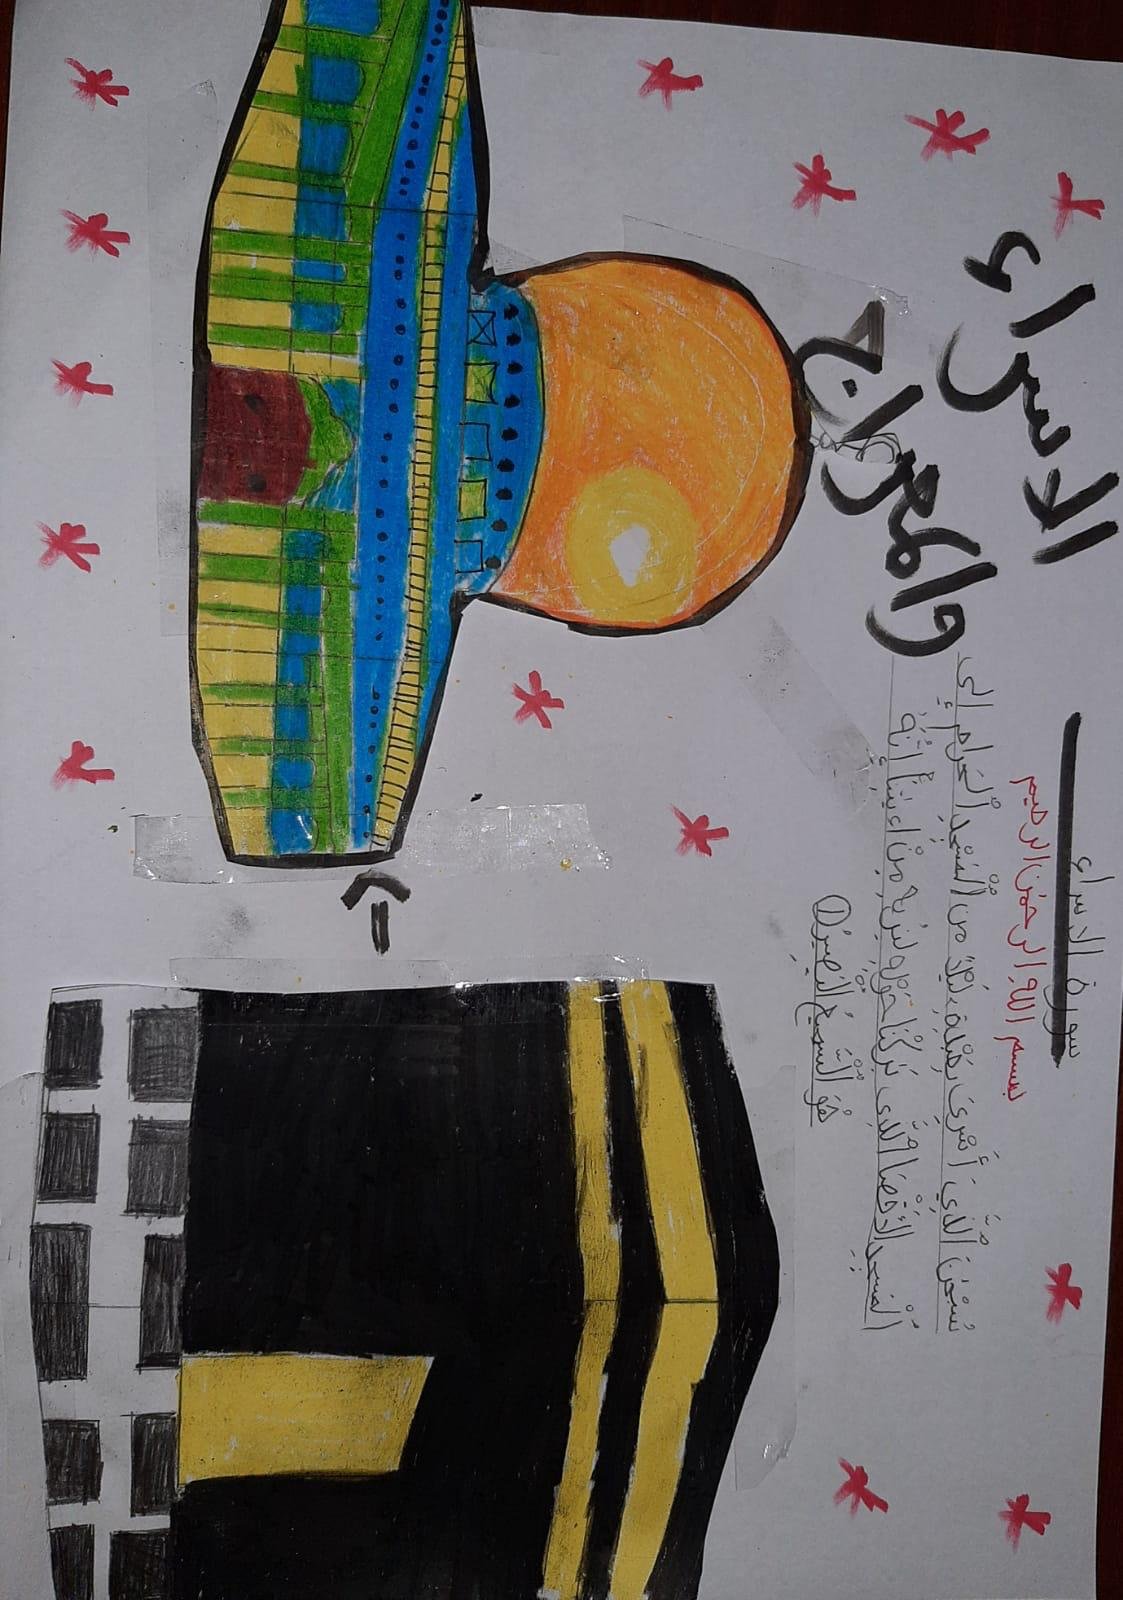 ذكرى الإسراء والمعراج وتكريم الامهات في المدرسة الجماهيرية بير الأمير-الناصرة بحلّة مُثيرةٍ وتواصل جديد "عن بعد"-11